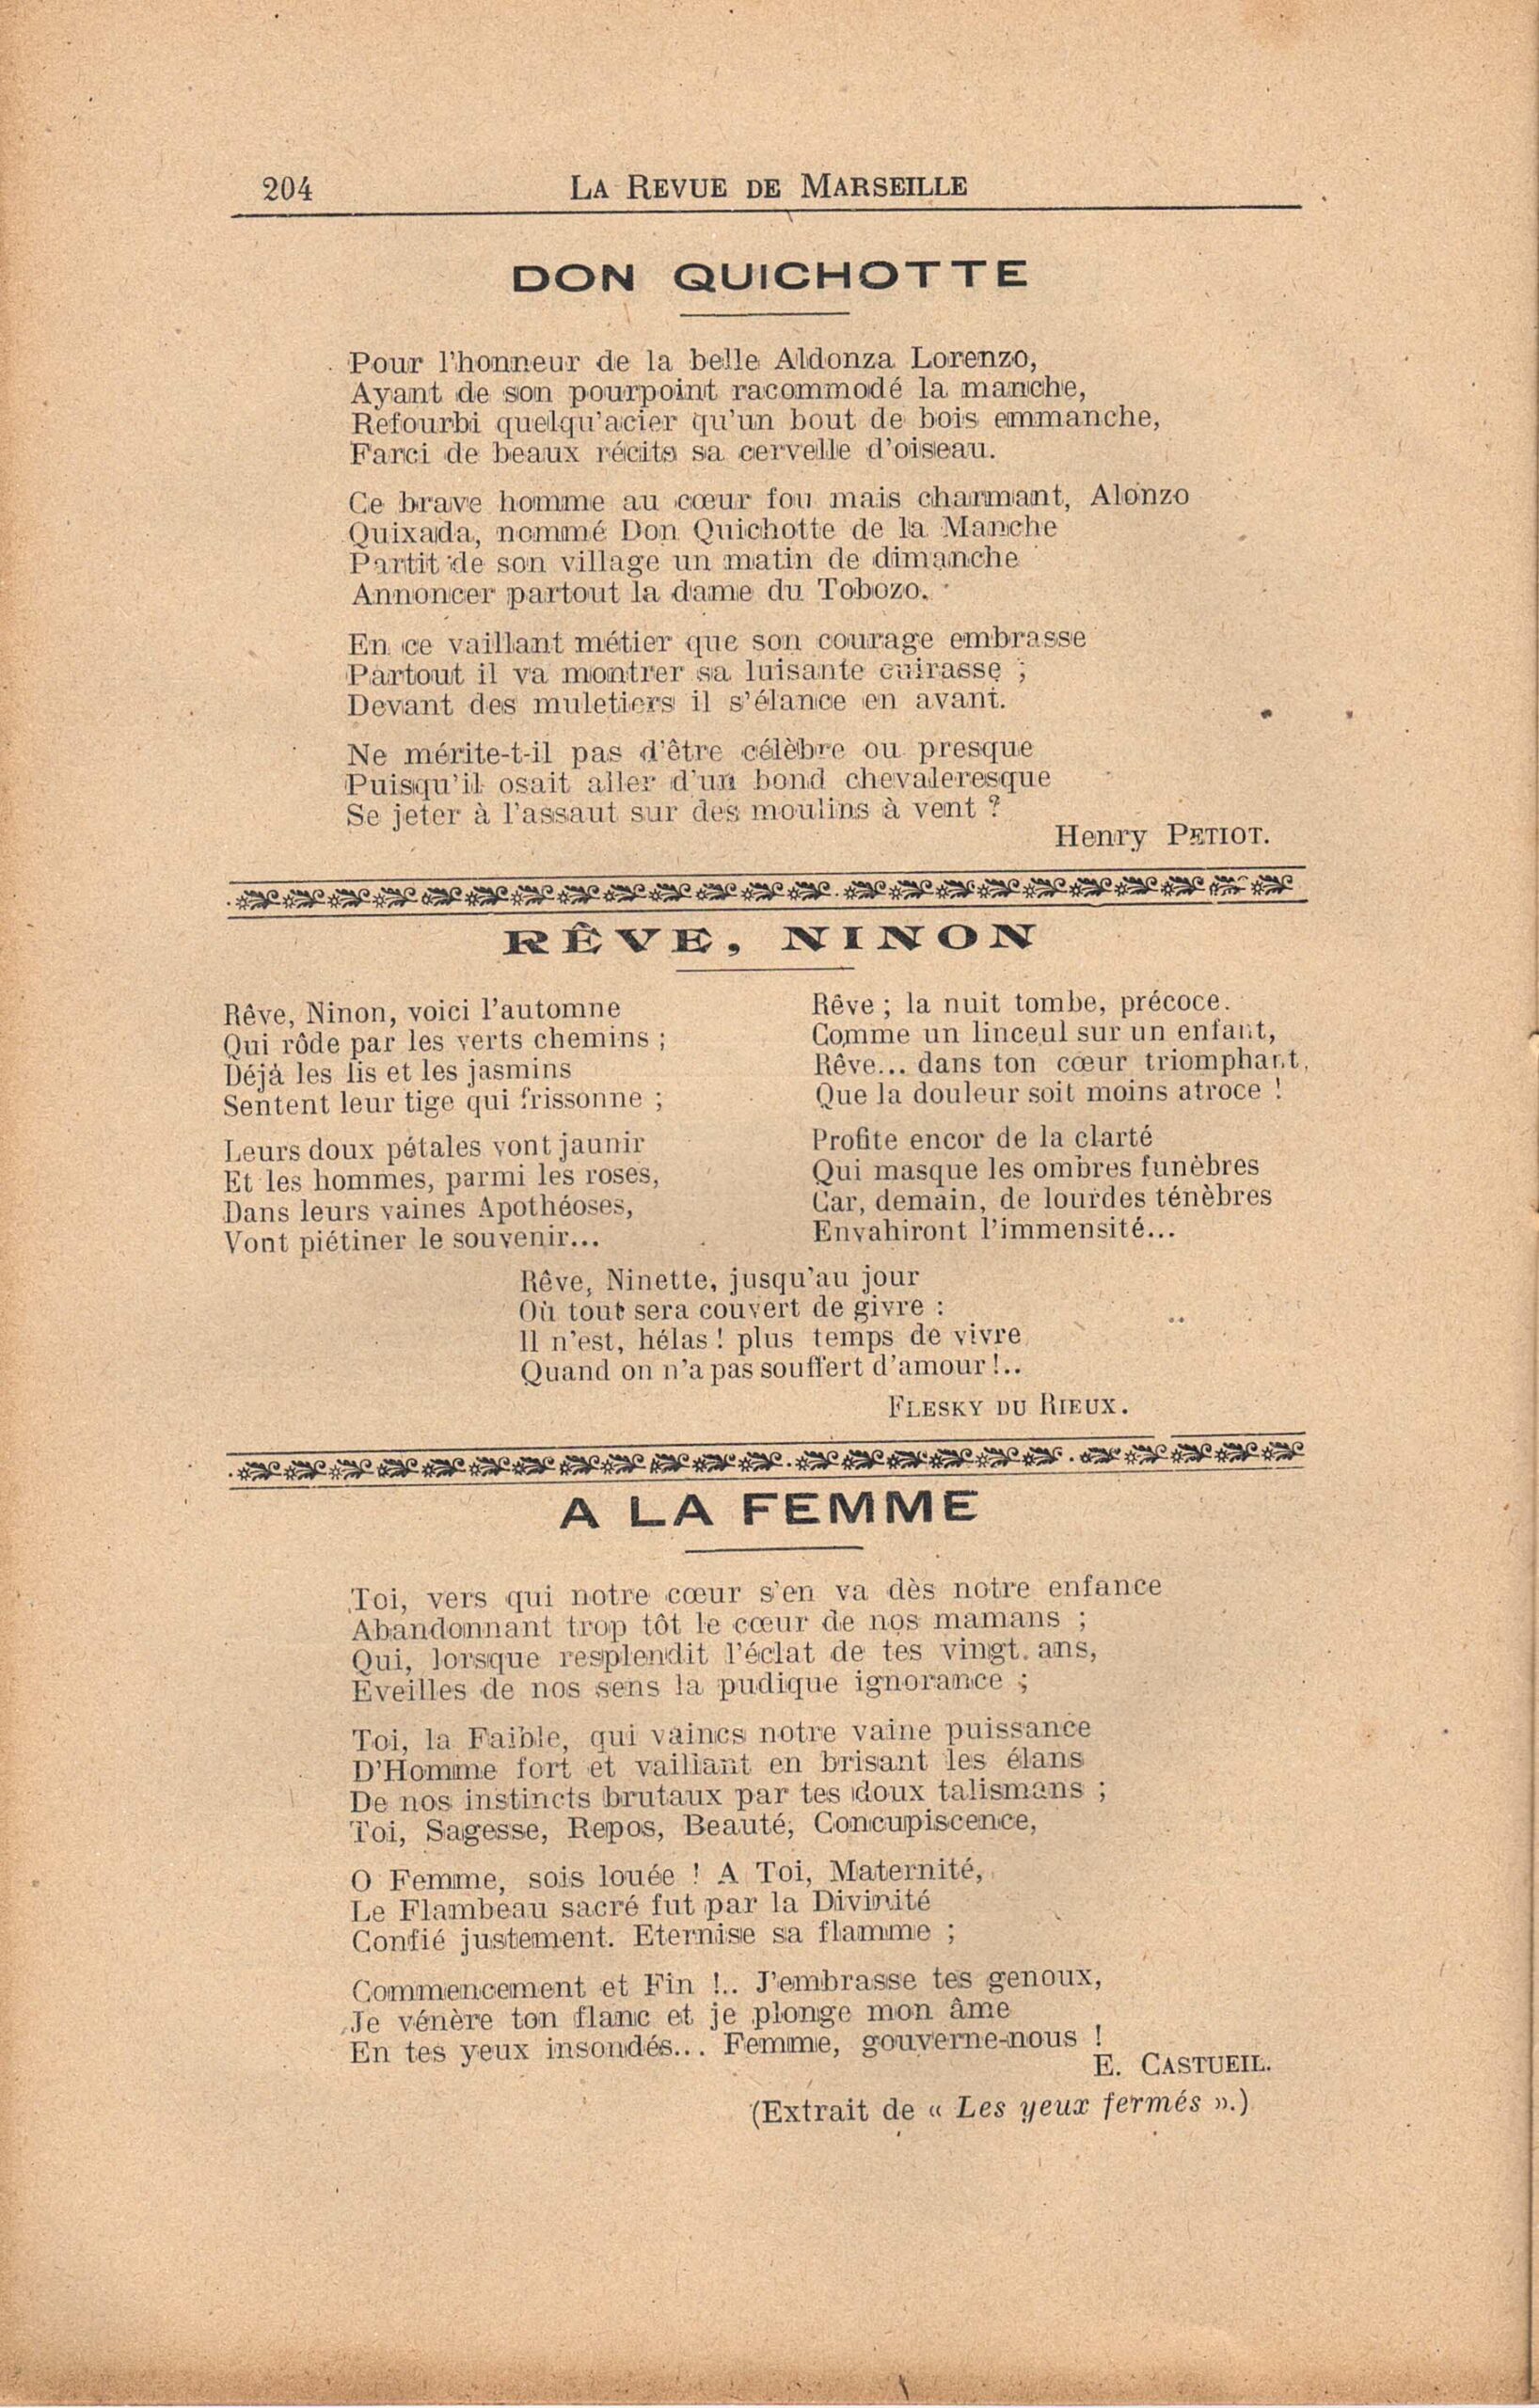 1919 12 28 La Revue de Marseille numéro 7 Don Quichotte